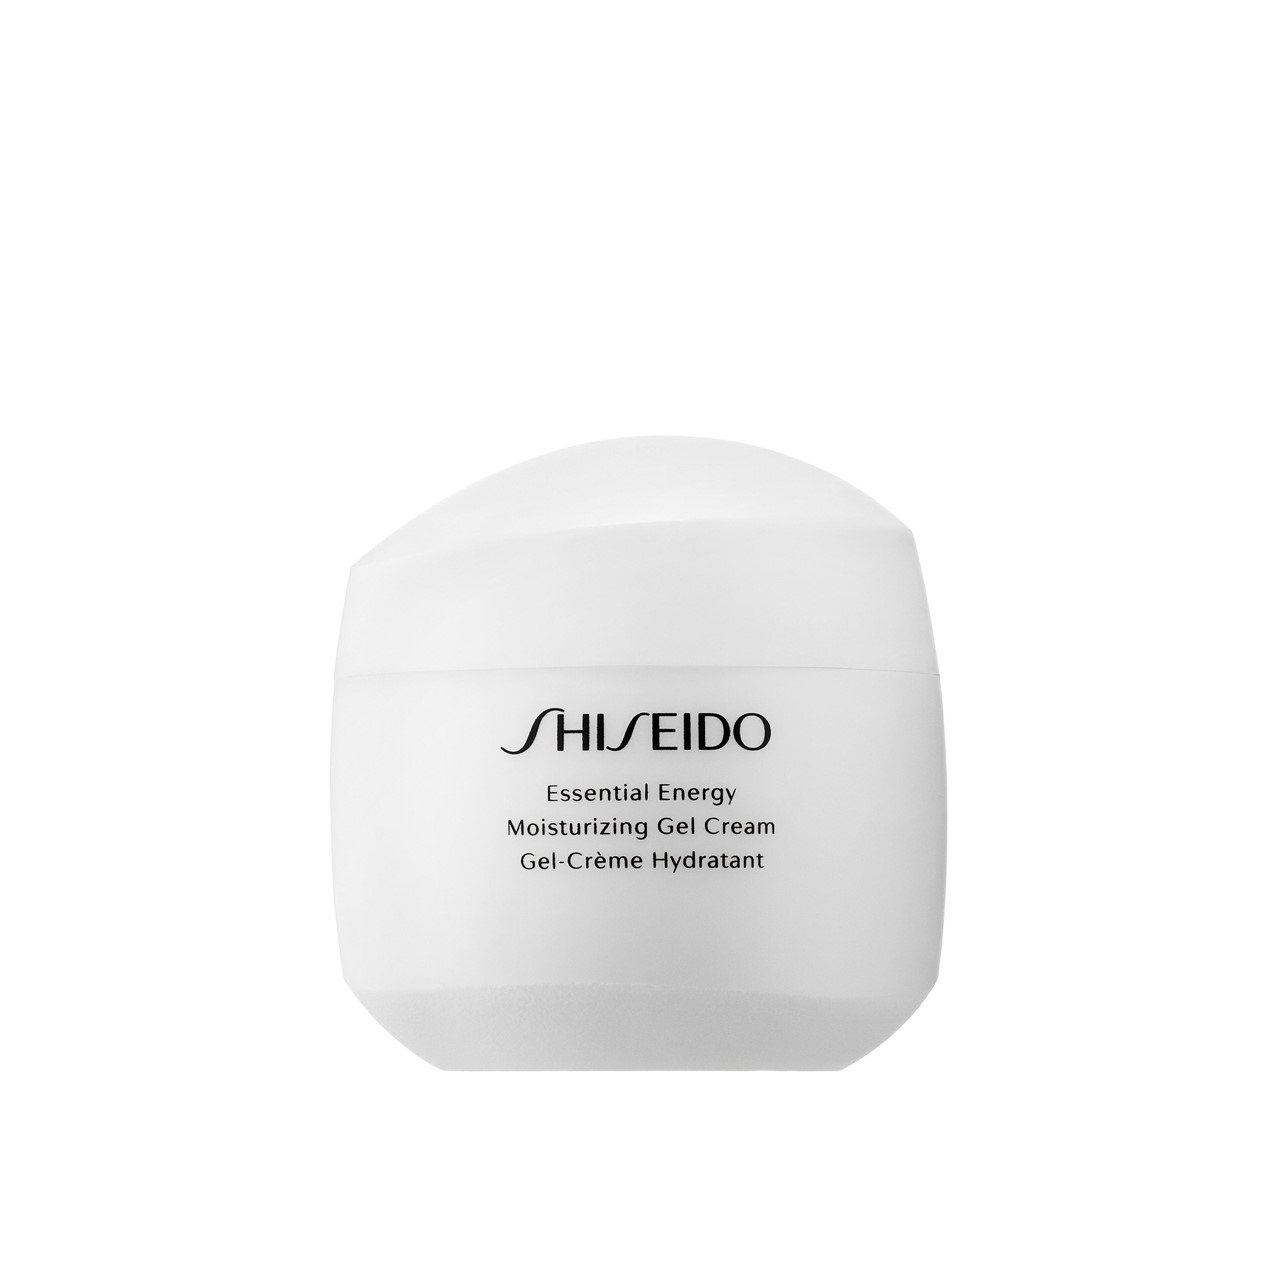 Шисейдо Энерджи крем. Shiseido Energizing Serum. Shiseido Advanced Essential Energy. Сефора дневной крем и ночной крем.